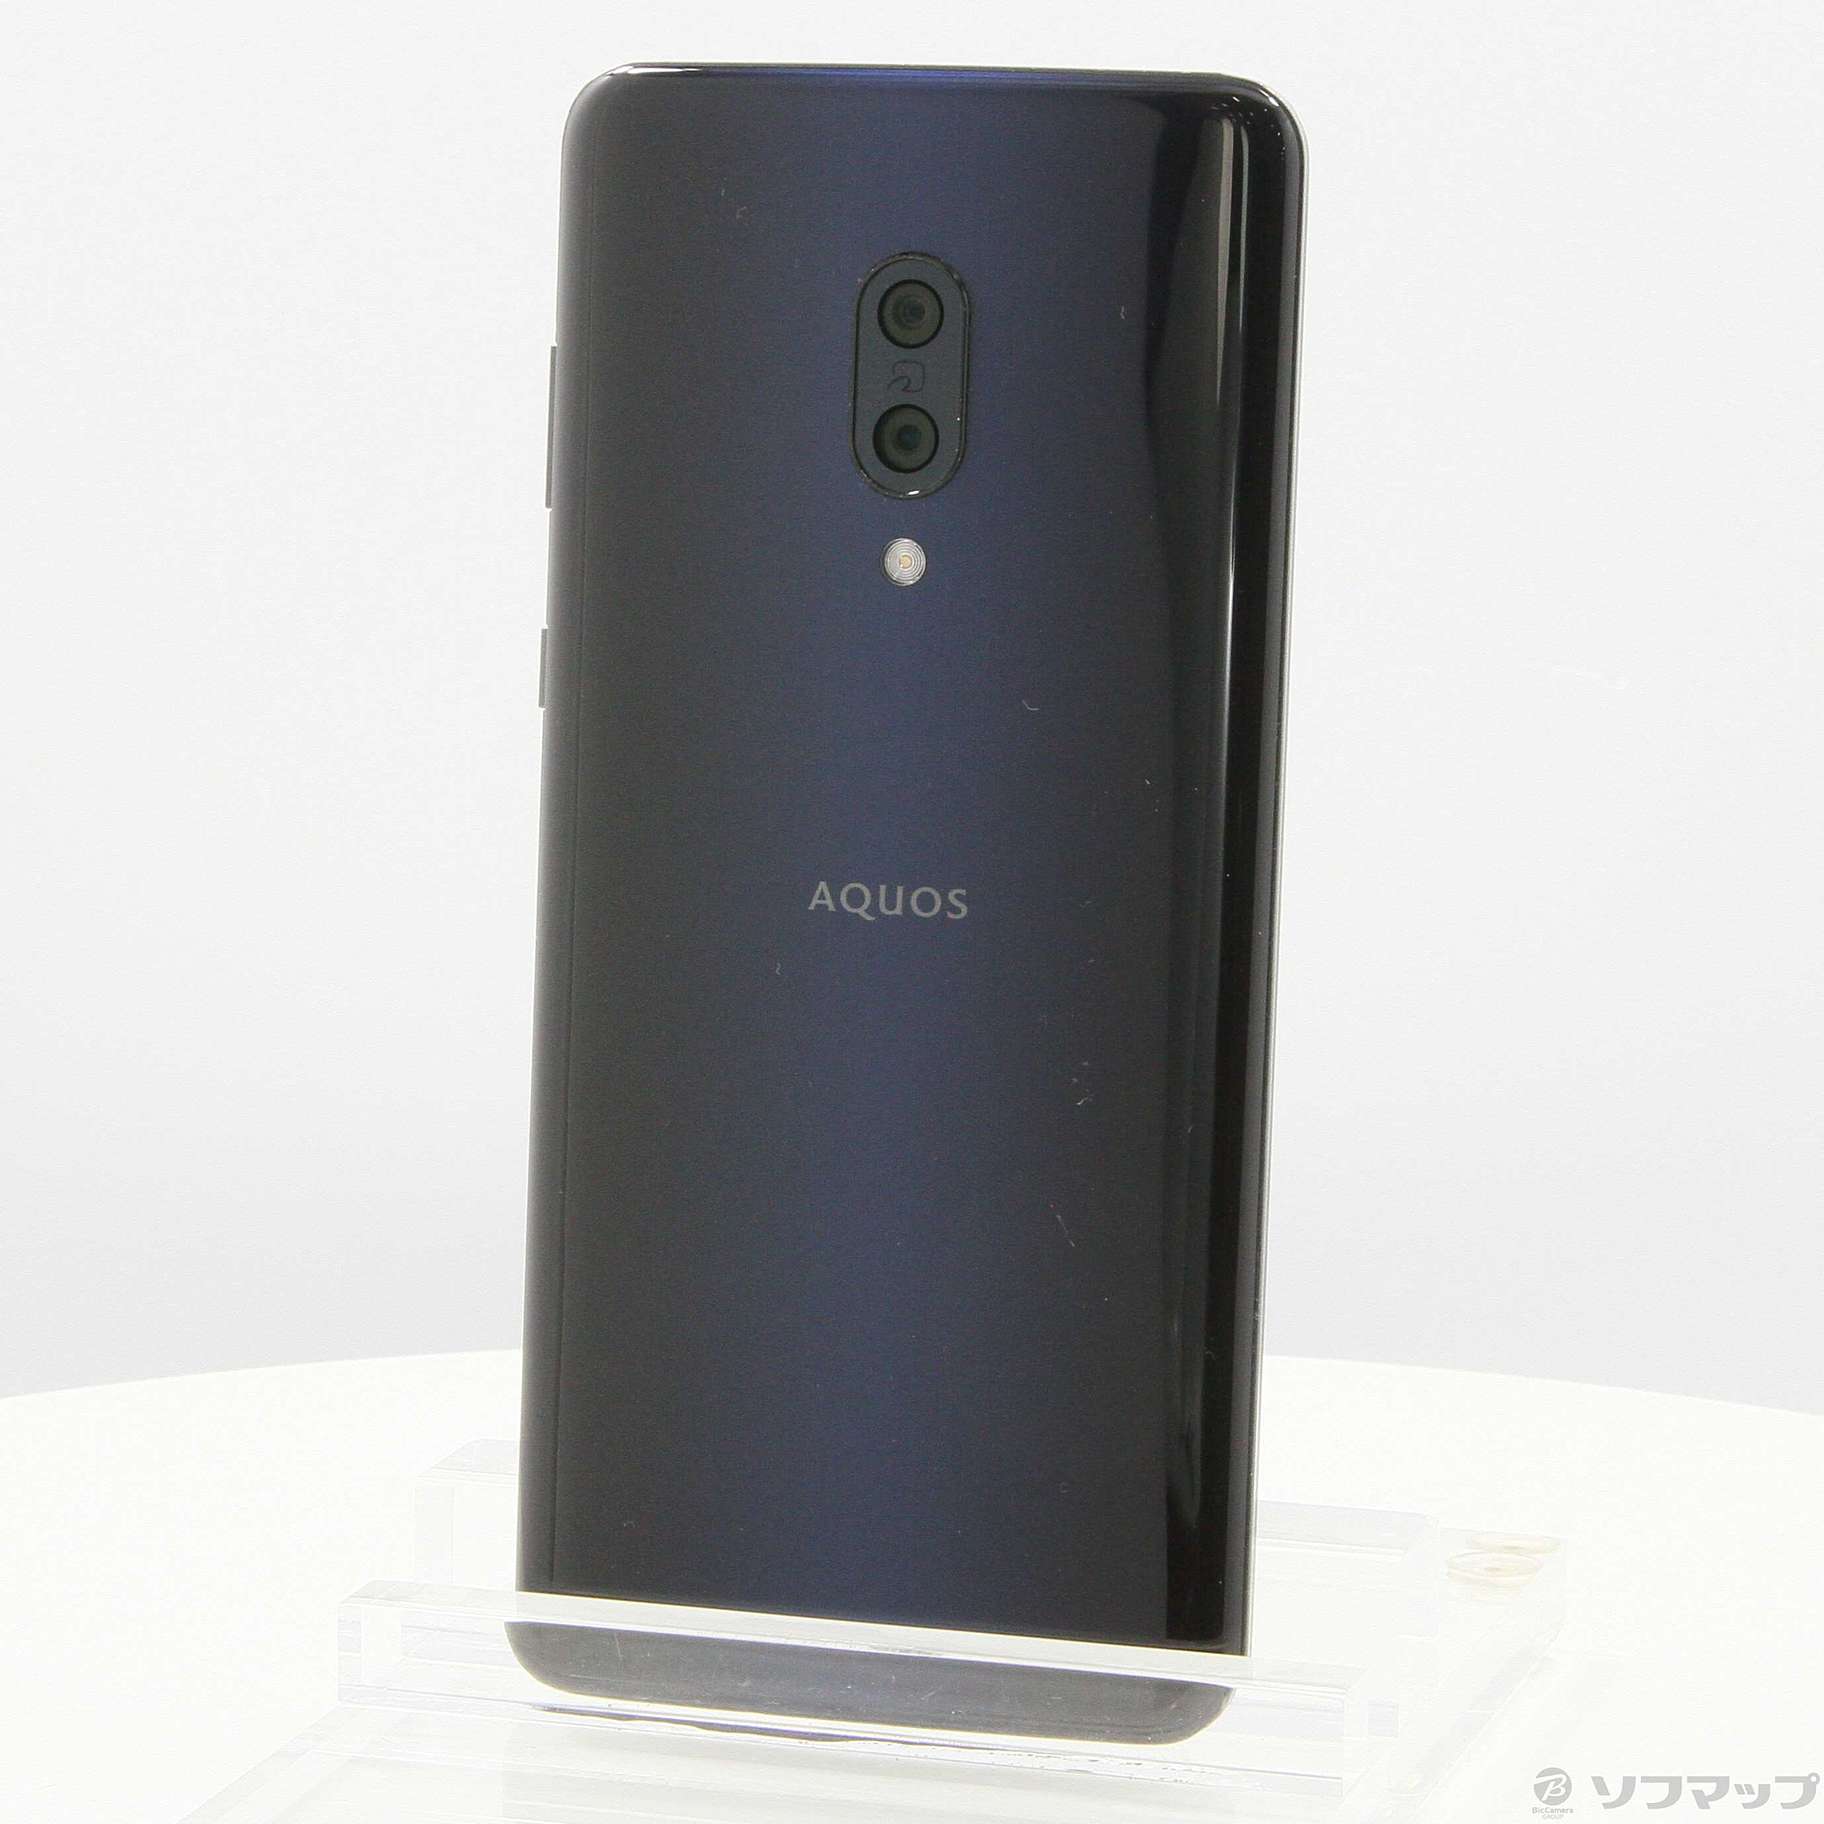 AQUOS zero2 アストロブラック 256GB ソフトバンク版スマートフォン